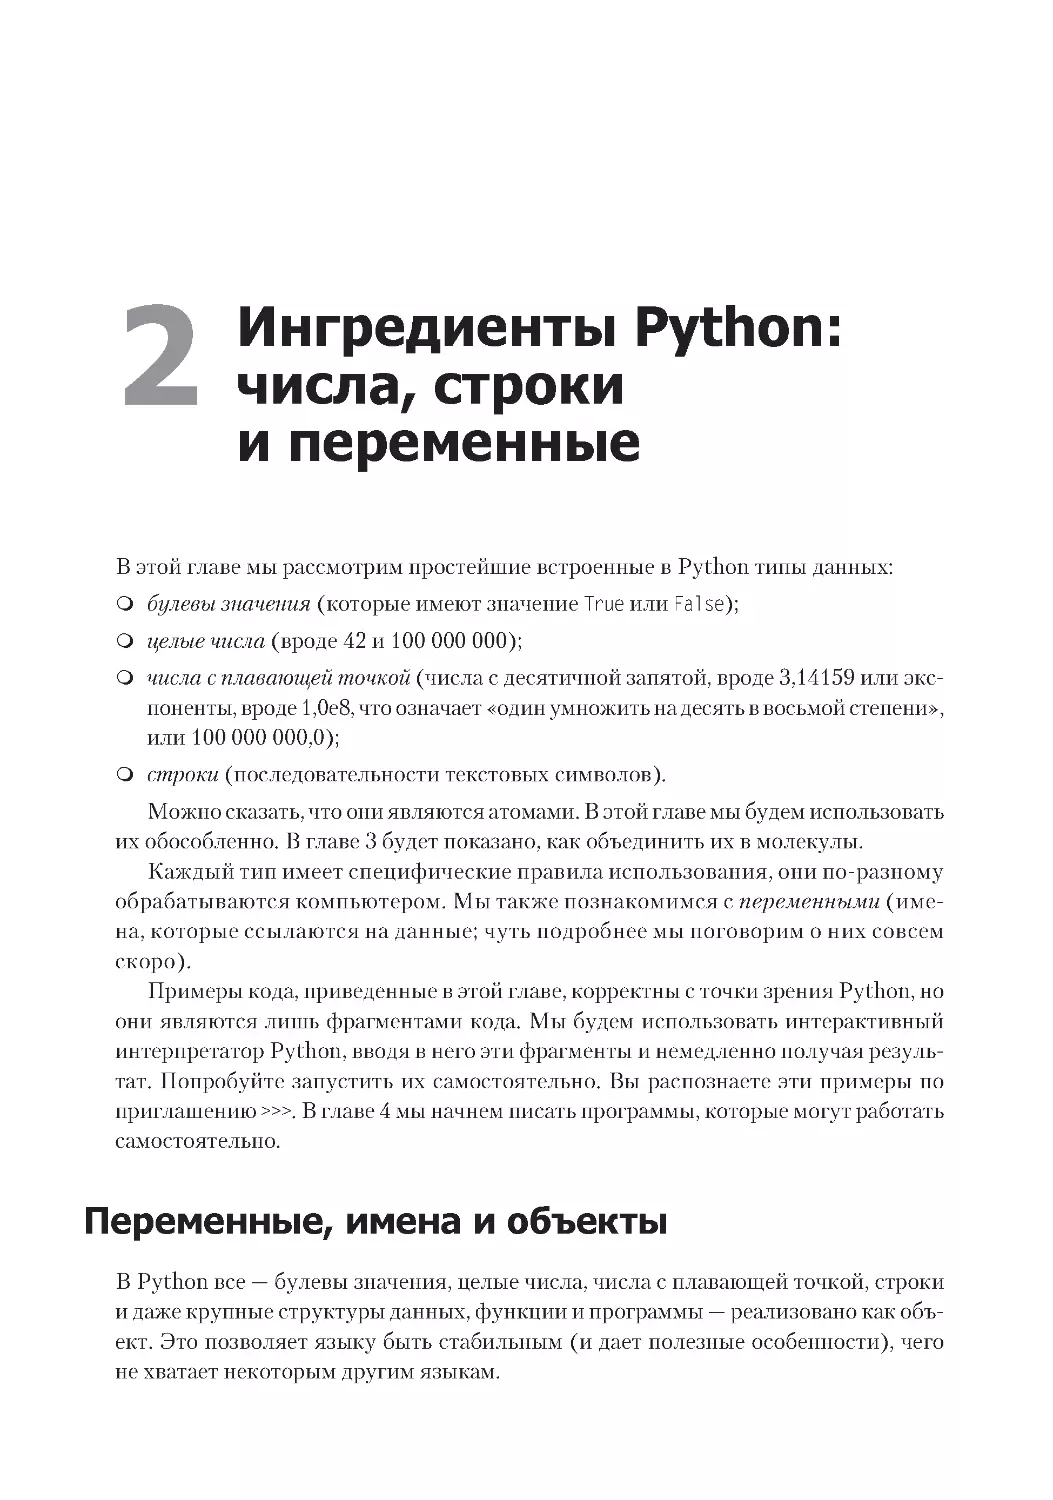 Глава 2. Ингредиенты Python
Переменные, имена и объекты